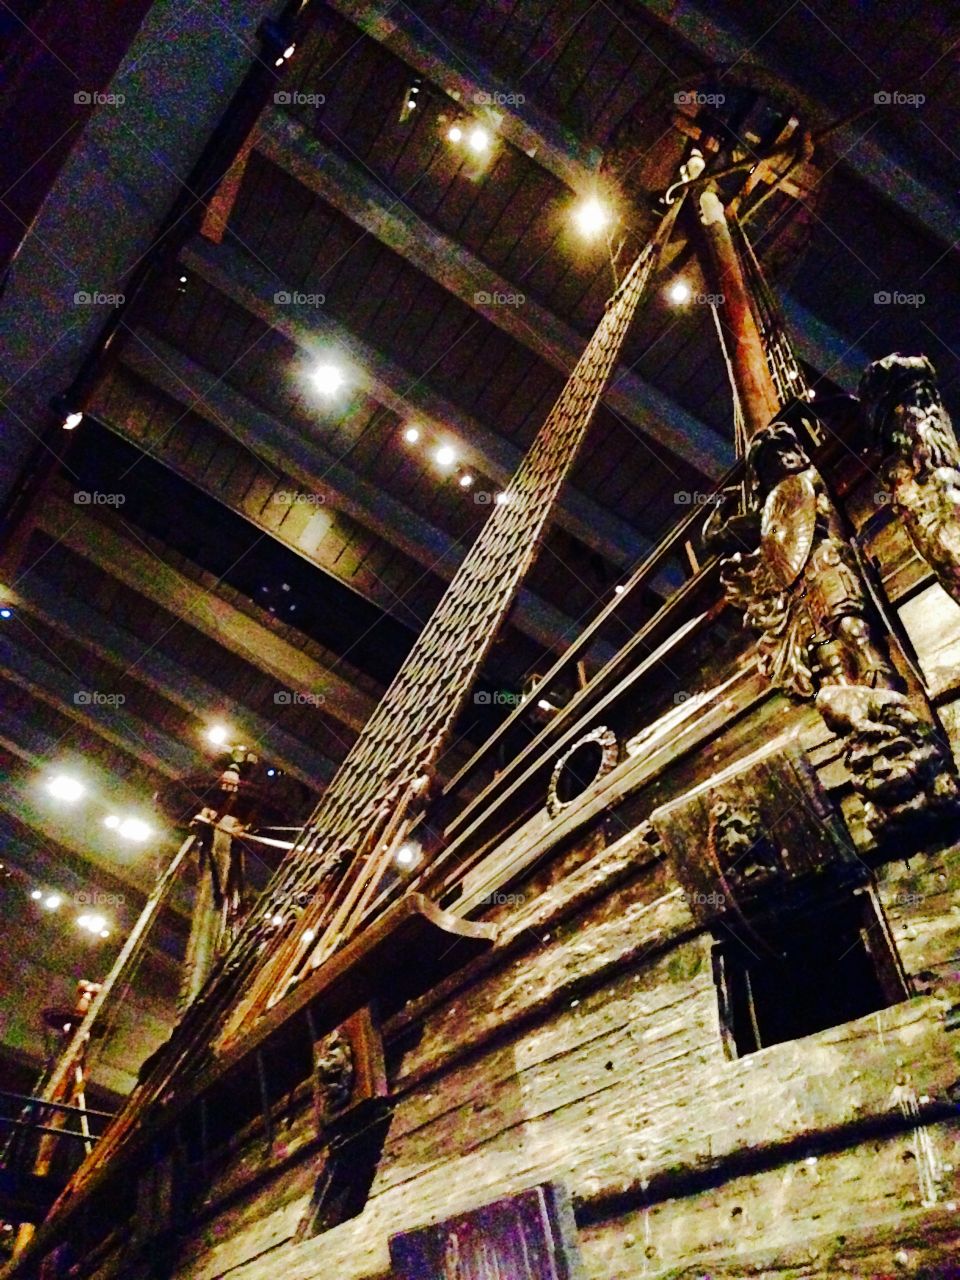 giant ship in vasa museum . giant ship in vasa museum 